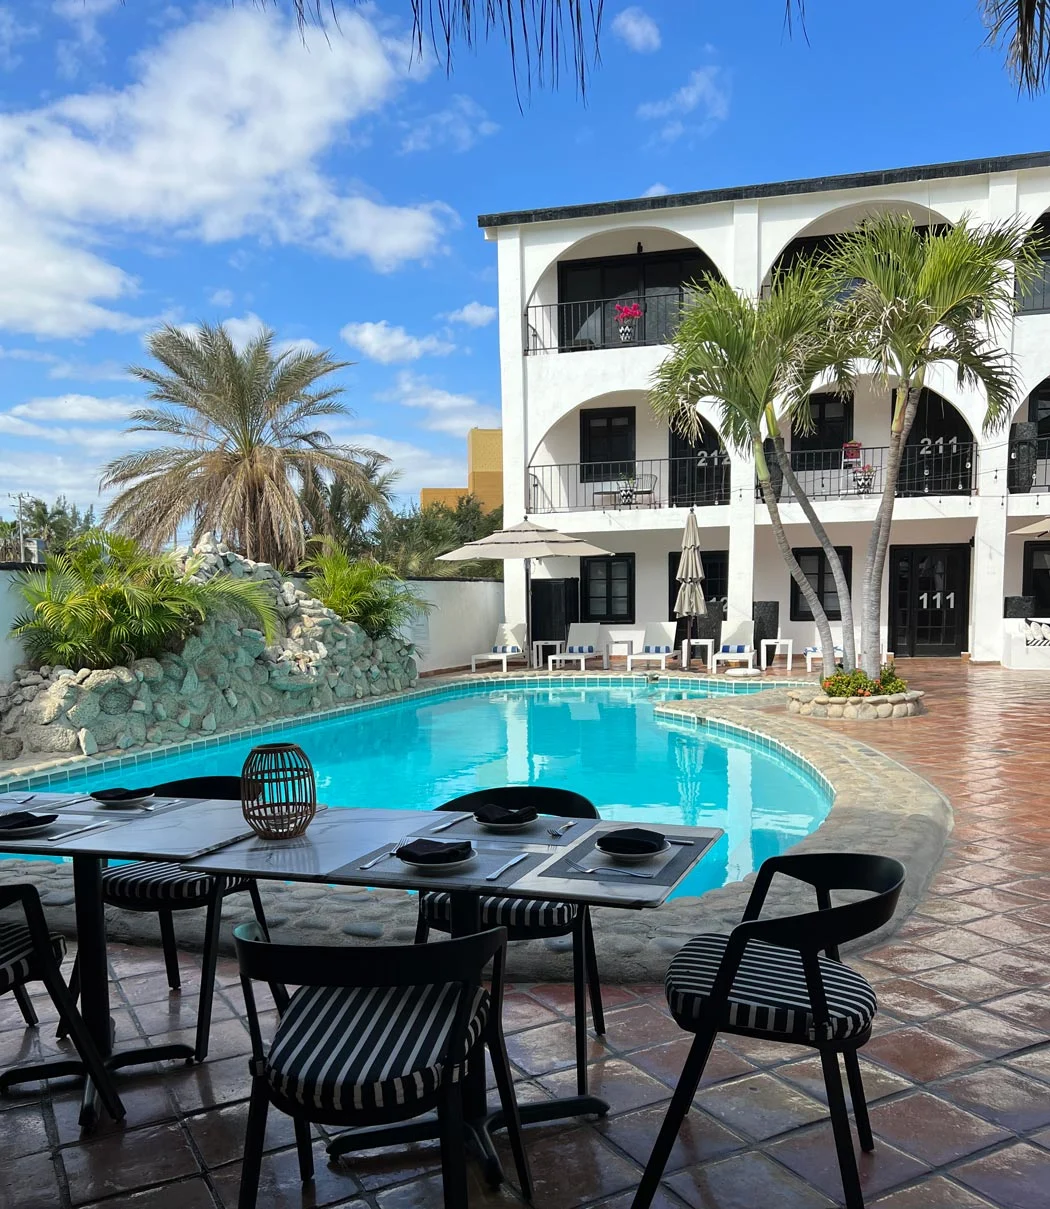 La Marina Inn is a cute hotel in Puerto Los Cabos near El Ganzo Beach.